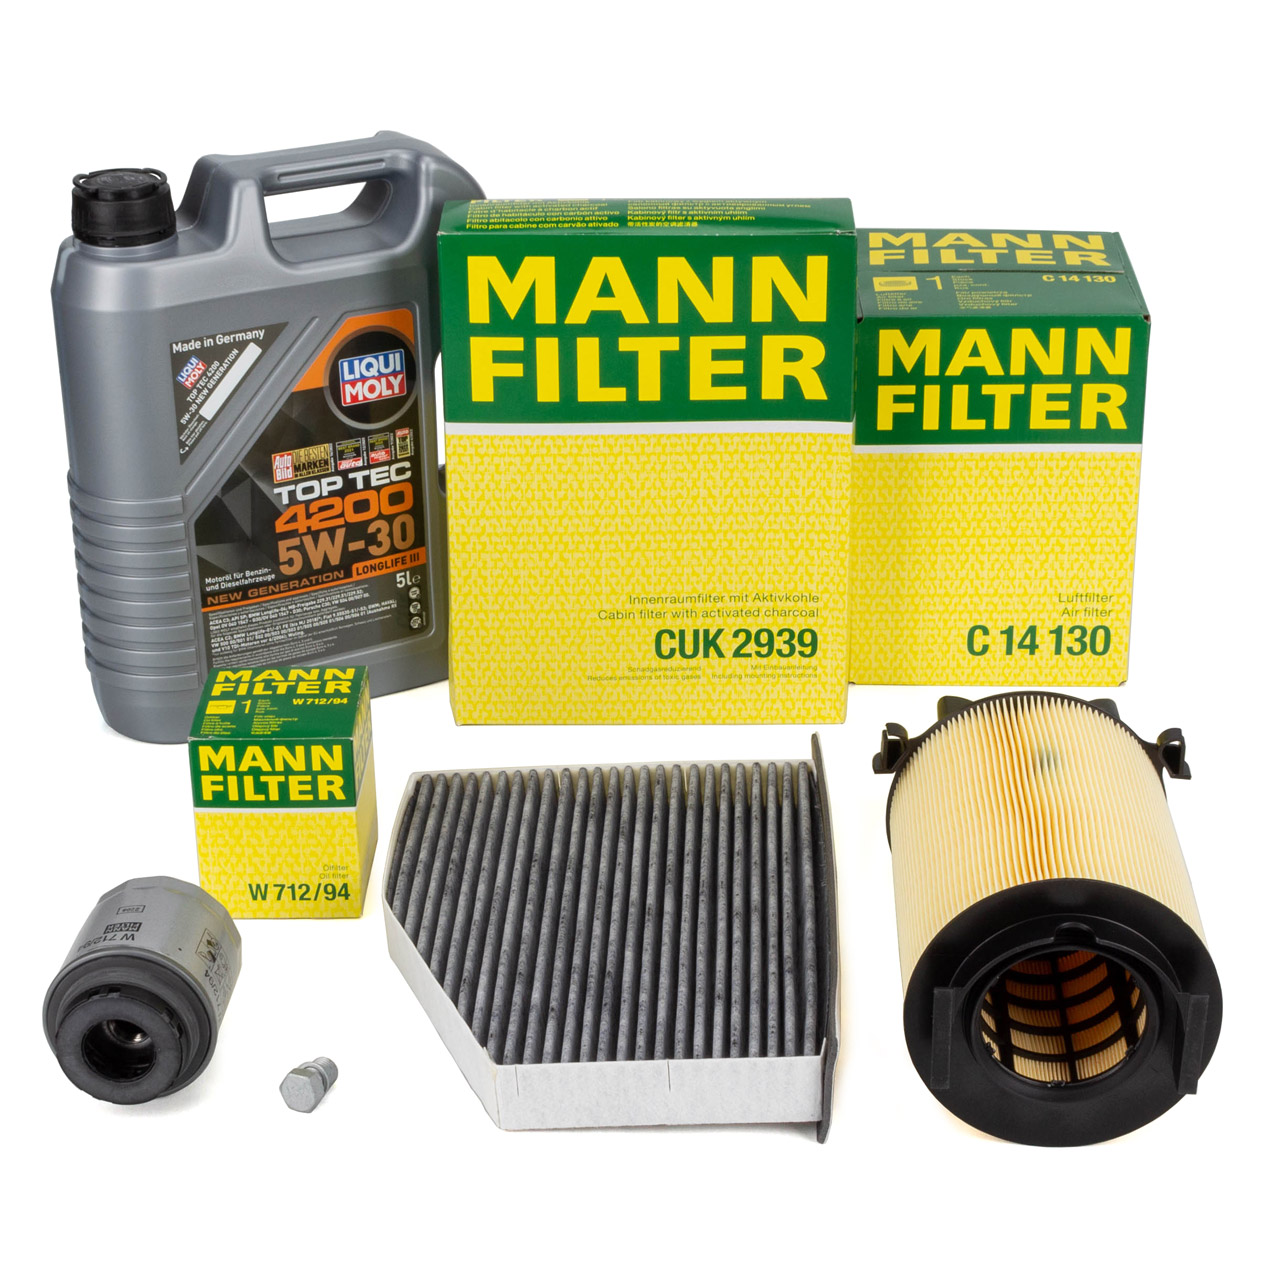 MANN Filterset + 5L LIQUI MOLY 5W30 Motoröl VW Golf 6 Passat B6 B7 A3 8P 1.2/1.4 TSI